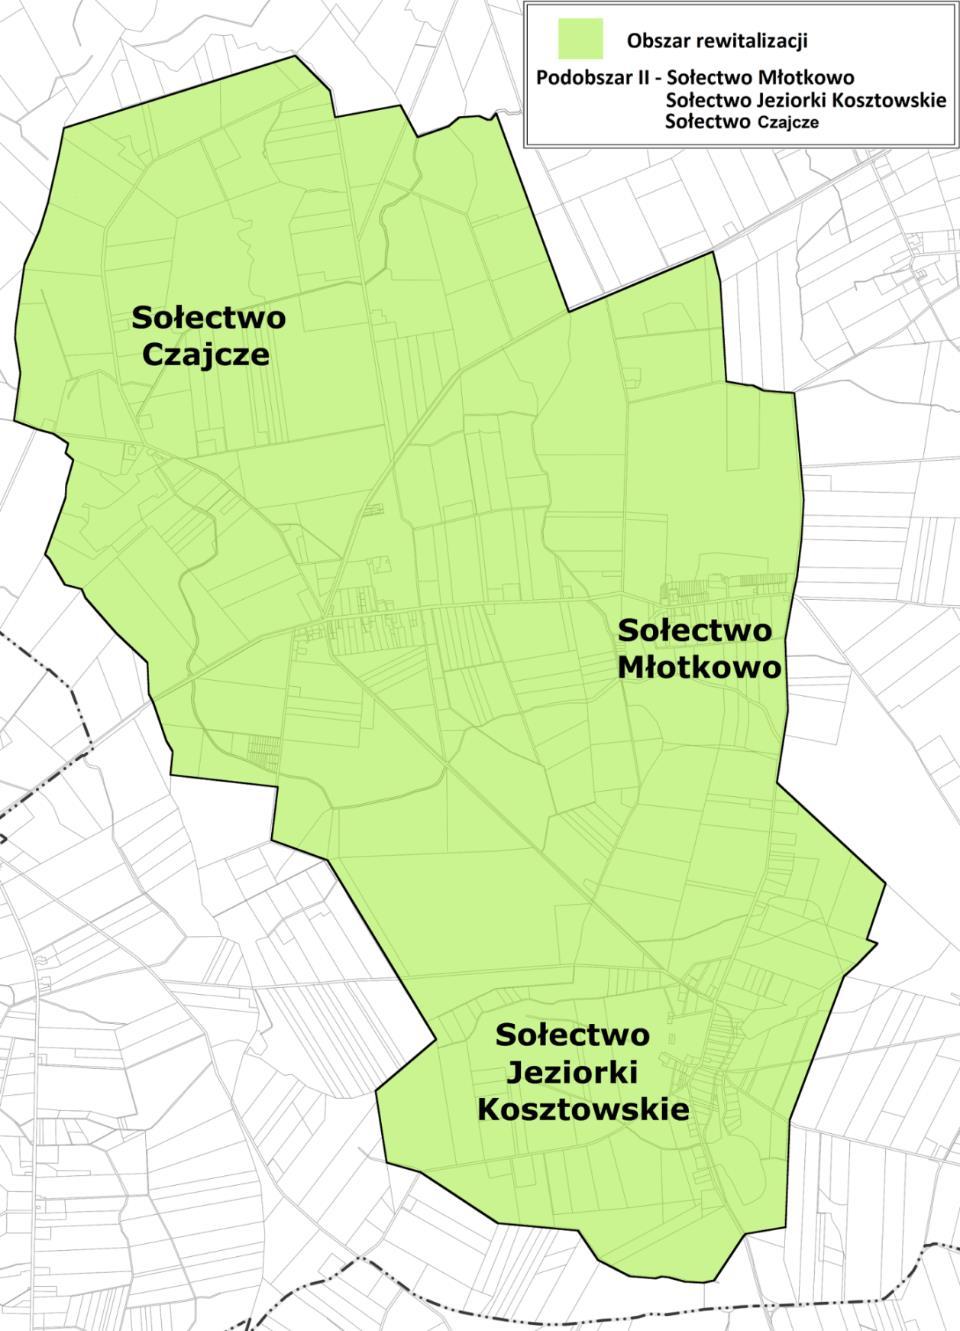 Mapa 6. Obszar rewitalizacji w gminie Wysoka. Źródło: opracowanie własne.